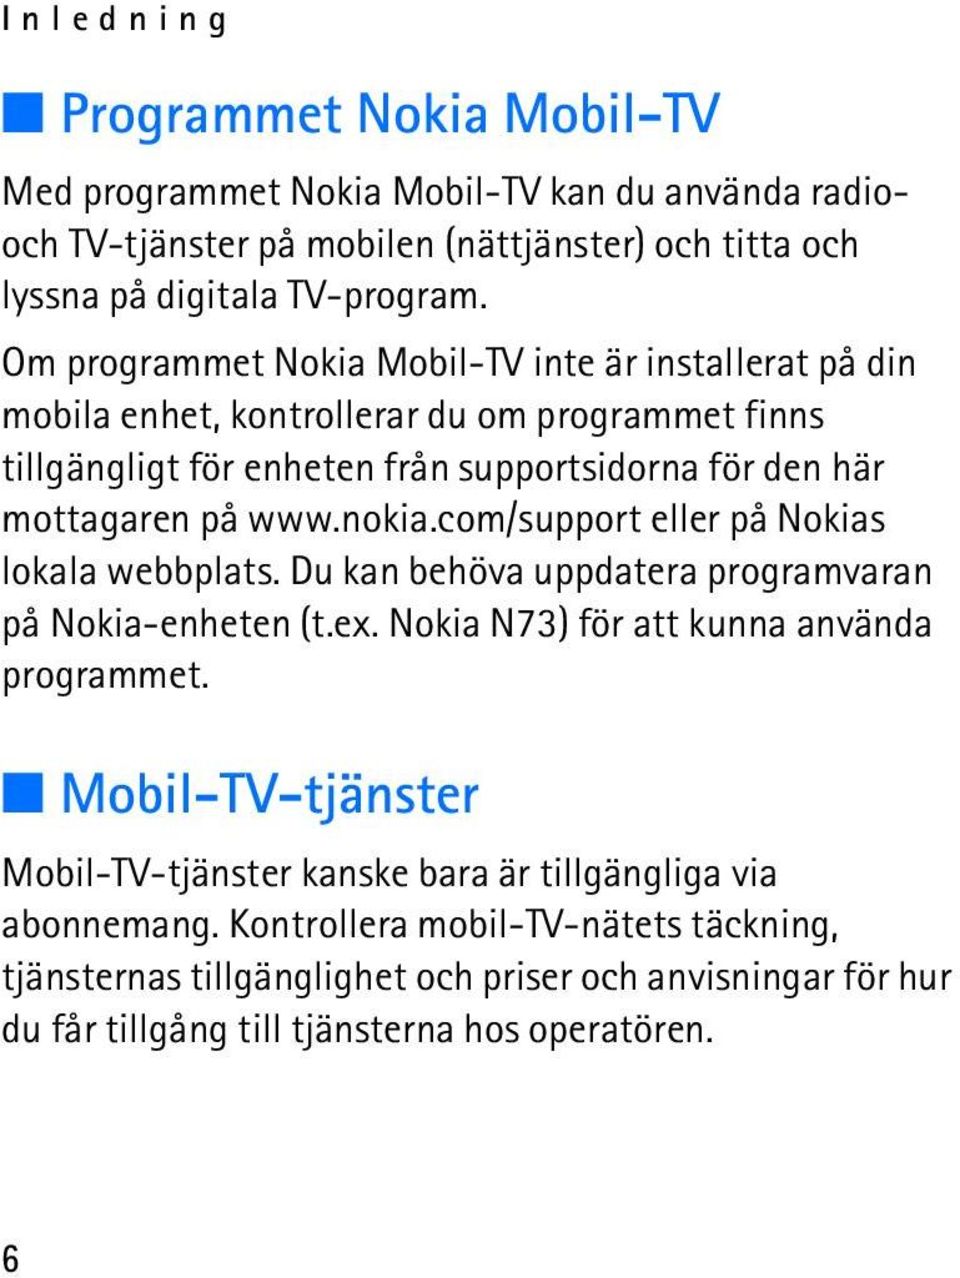 nokia.com/support eller på Nokias lokala webbplats. Du kan behöva uppdatera programvaran på Nokia-enheten (t.ex. Nokia N73) för att kunna använda programmet.